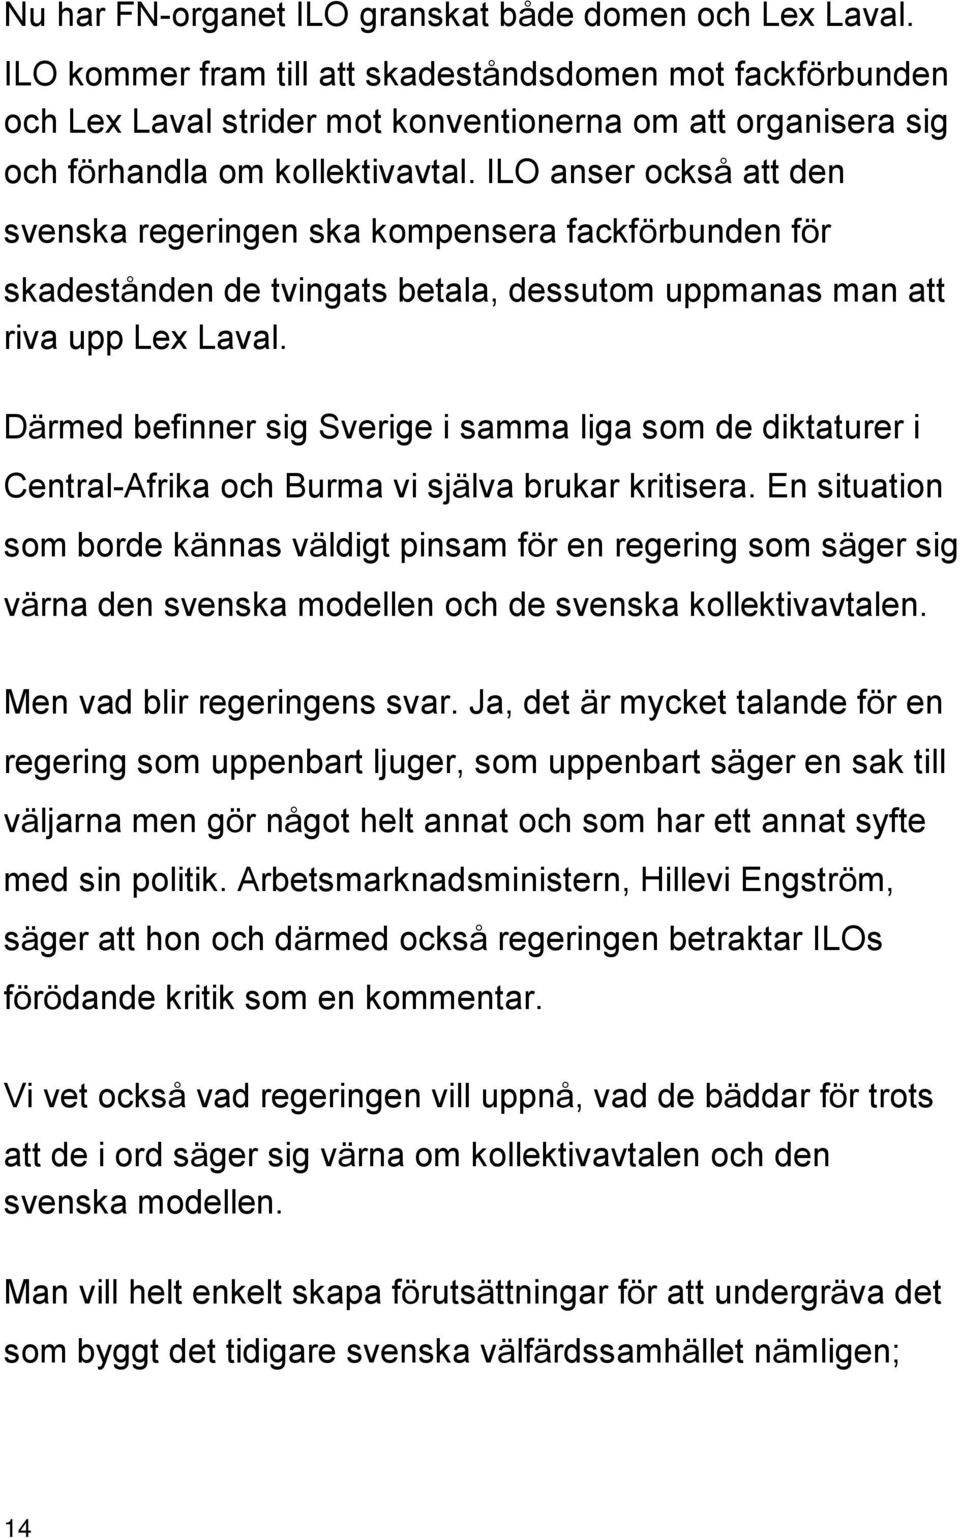 ILO anser också att den svenska regeringen ska kompensera fackförbunden för skadestånden de tvingats betala, dessutom uppmanas man att riva upp Lex Laval.